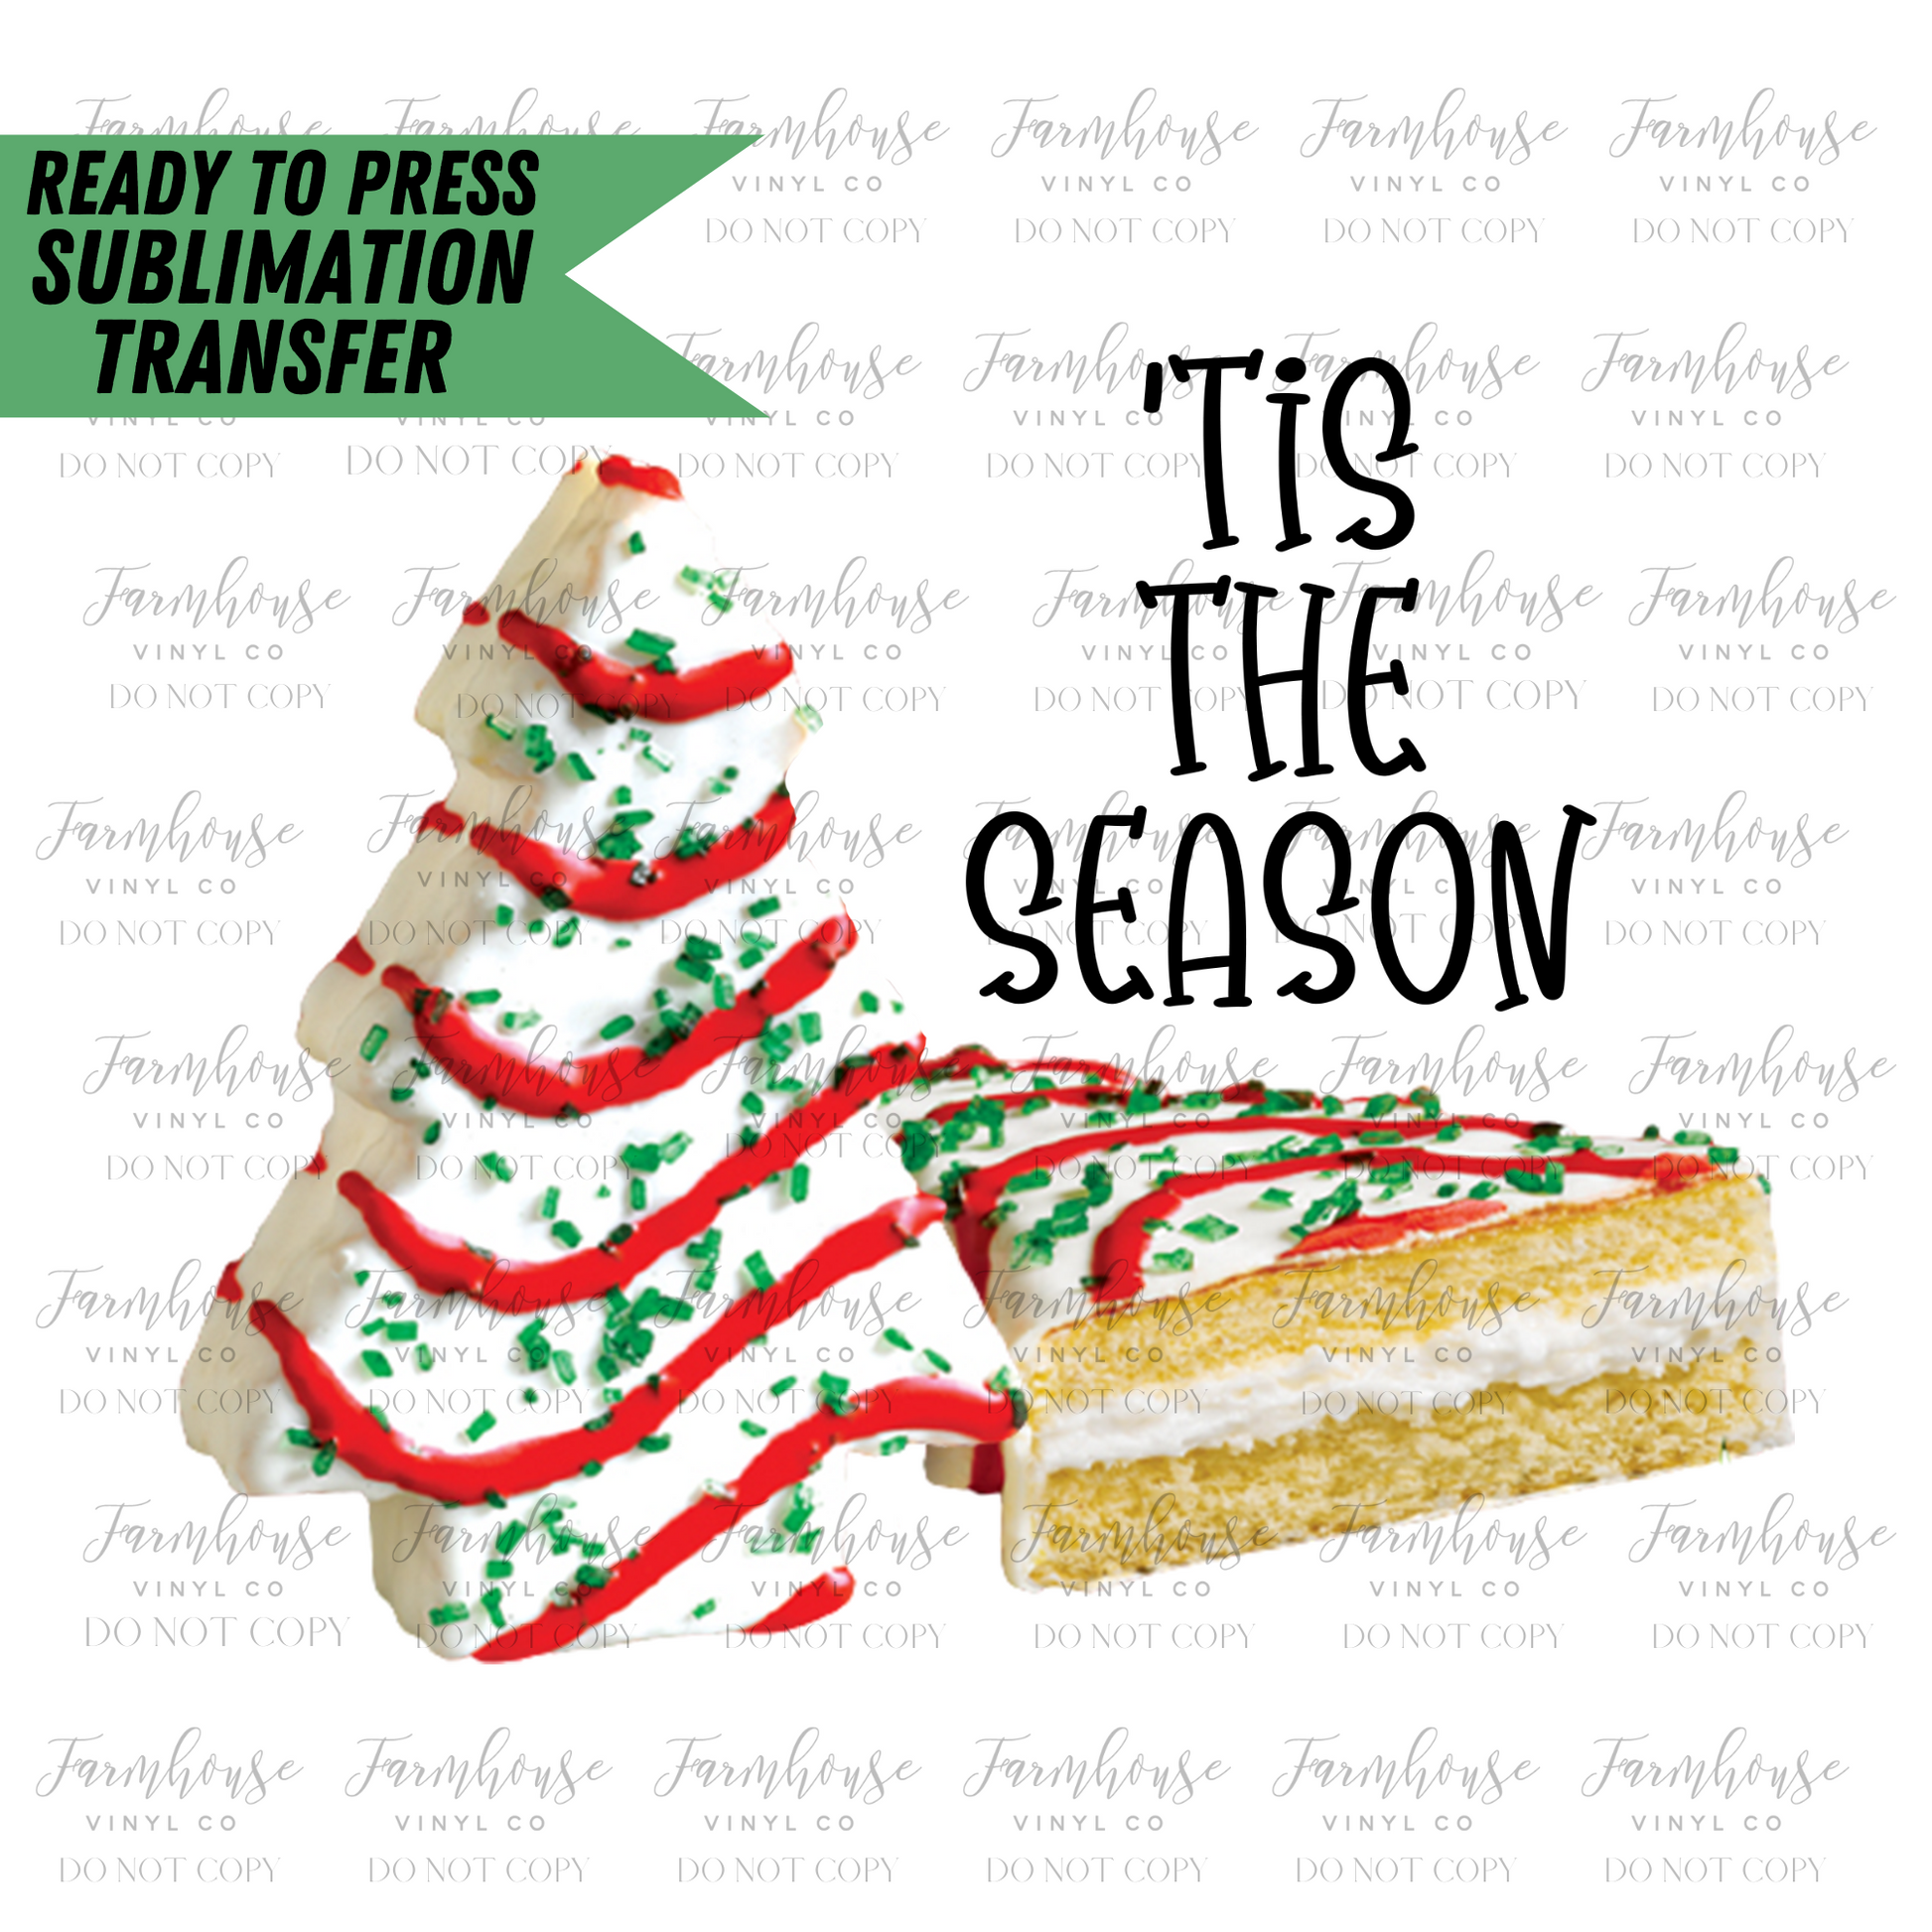 Tis The Season Christmas Snack Cakes Ready To Press Sublimation Transfer - Farmhouse Vinyl Co